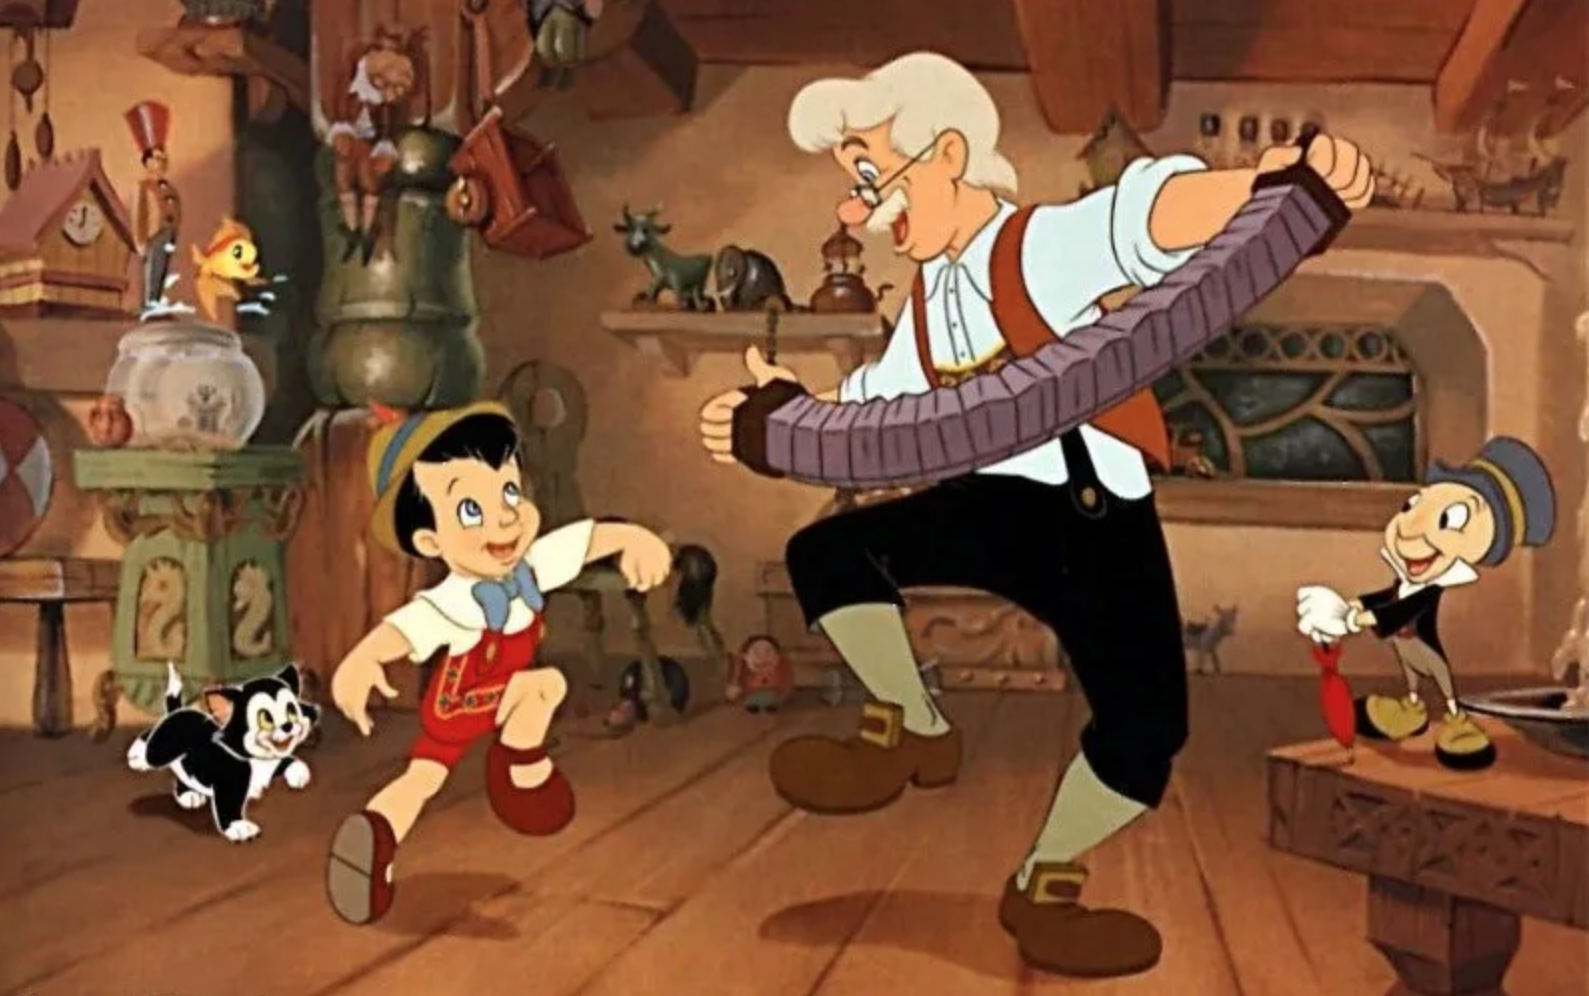 Geppetto och Pinocchio